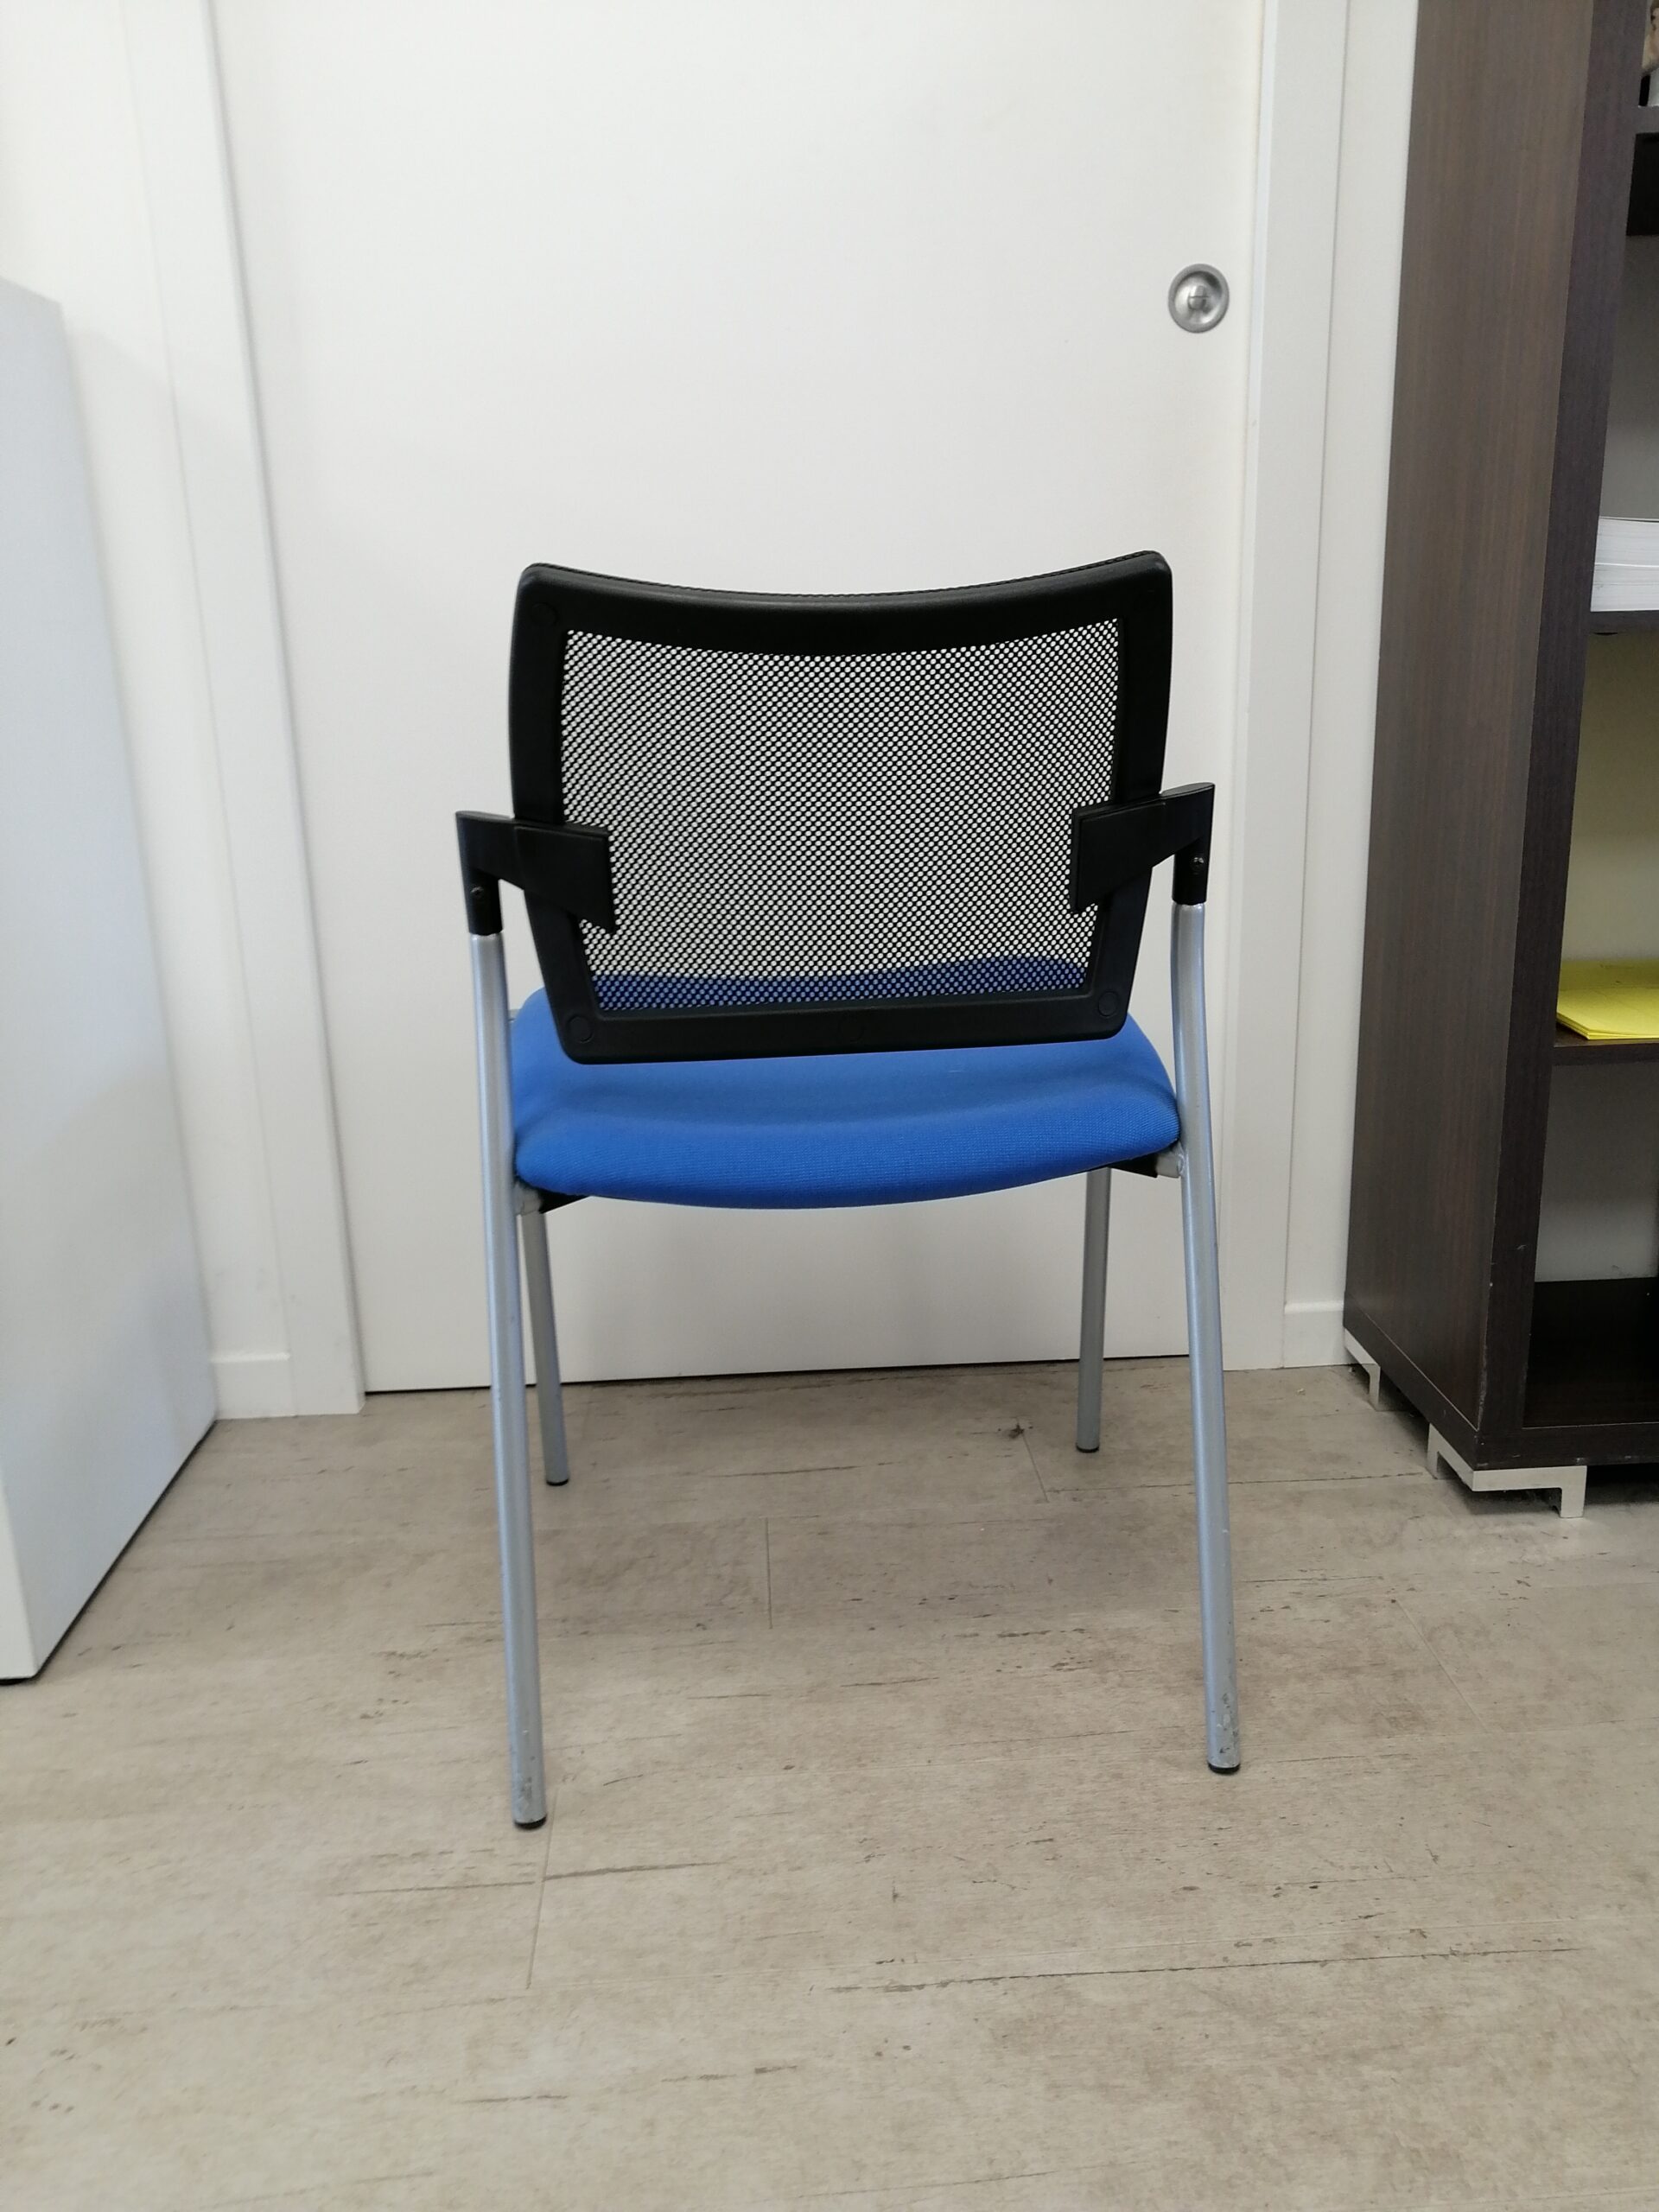 Chaise-4 pieds gris-Bleue-Noire-Occasion